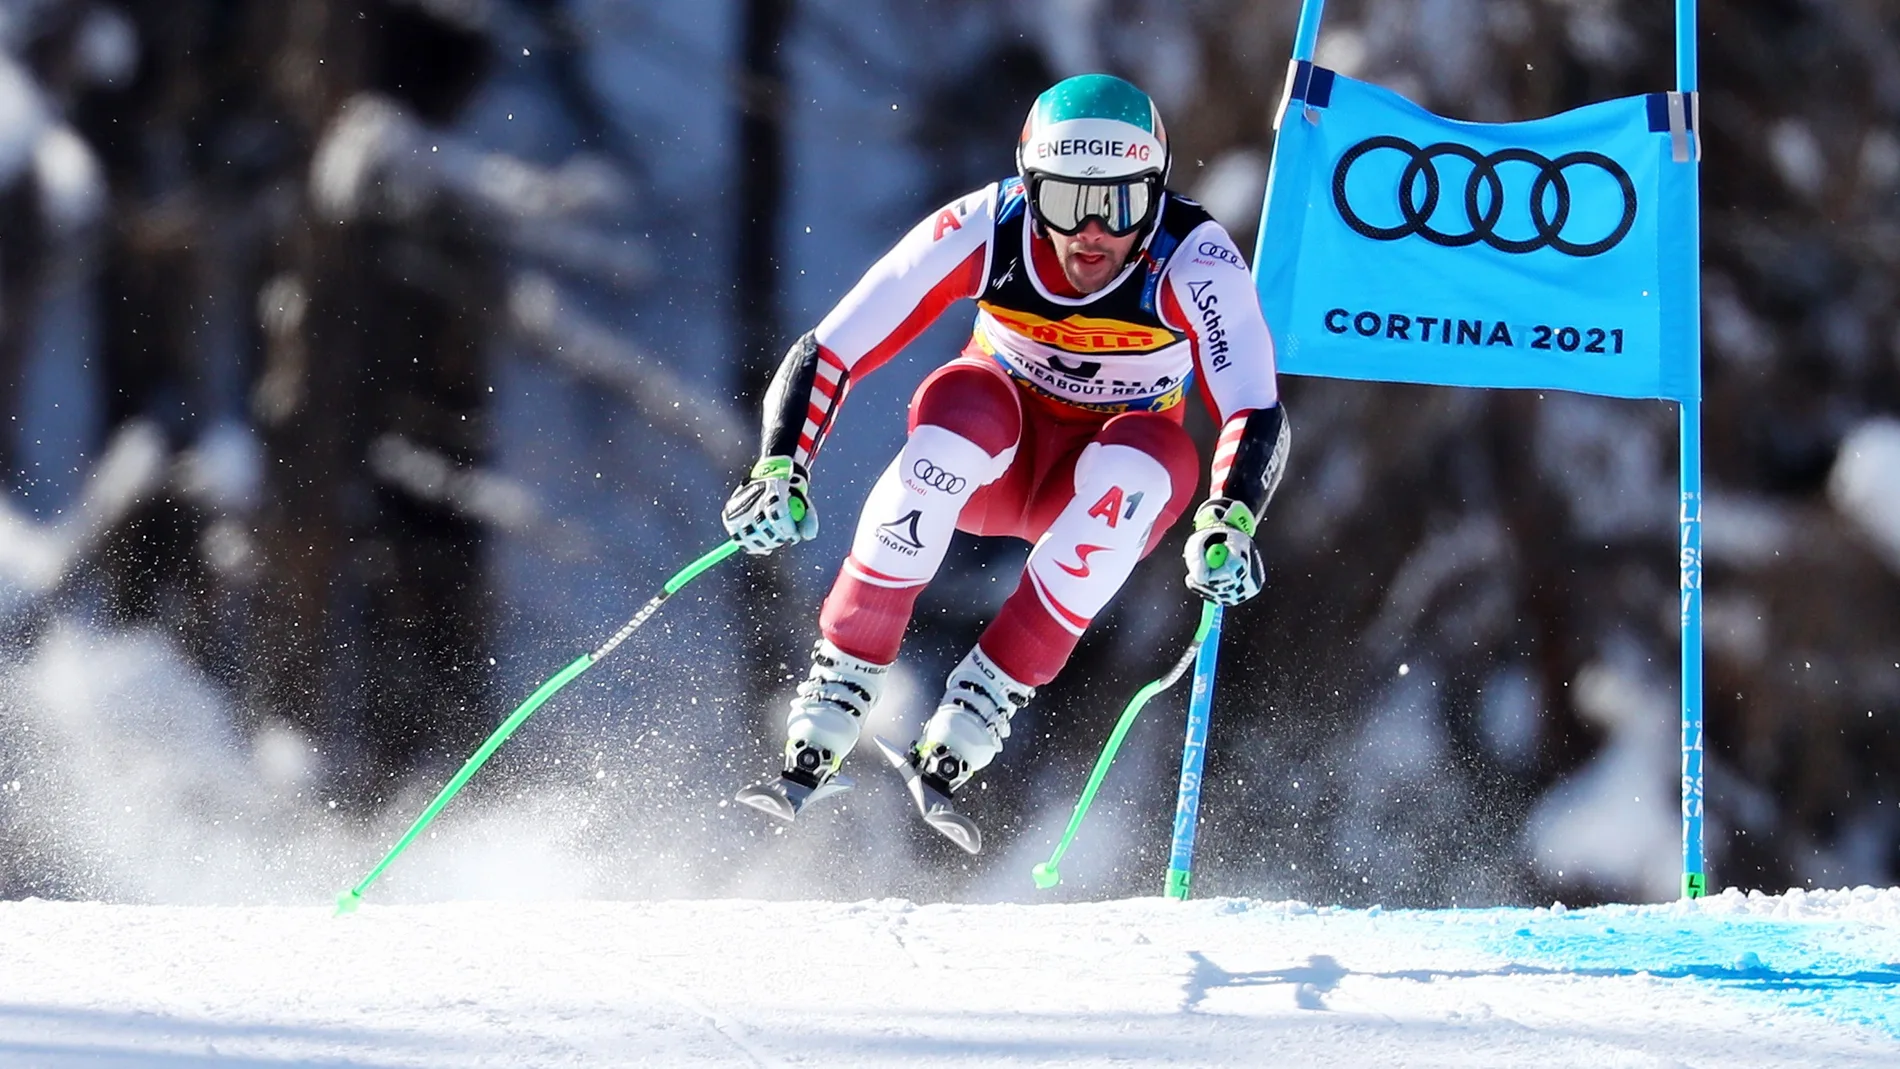 El austriaco Vincent Kriechmayr, en acción durante la carrera de Súper G masculino en los Campeonatos del Mundo de Esquí Alpino en Cortina d'Ampezzo, Italia, 11 de febrero de 2021. EFE/EPA/ANDREA SOLERO